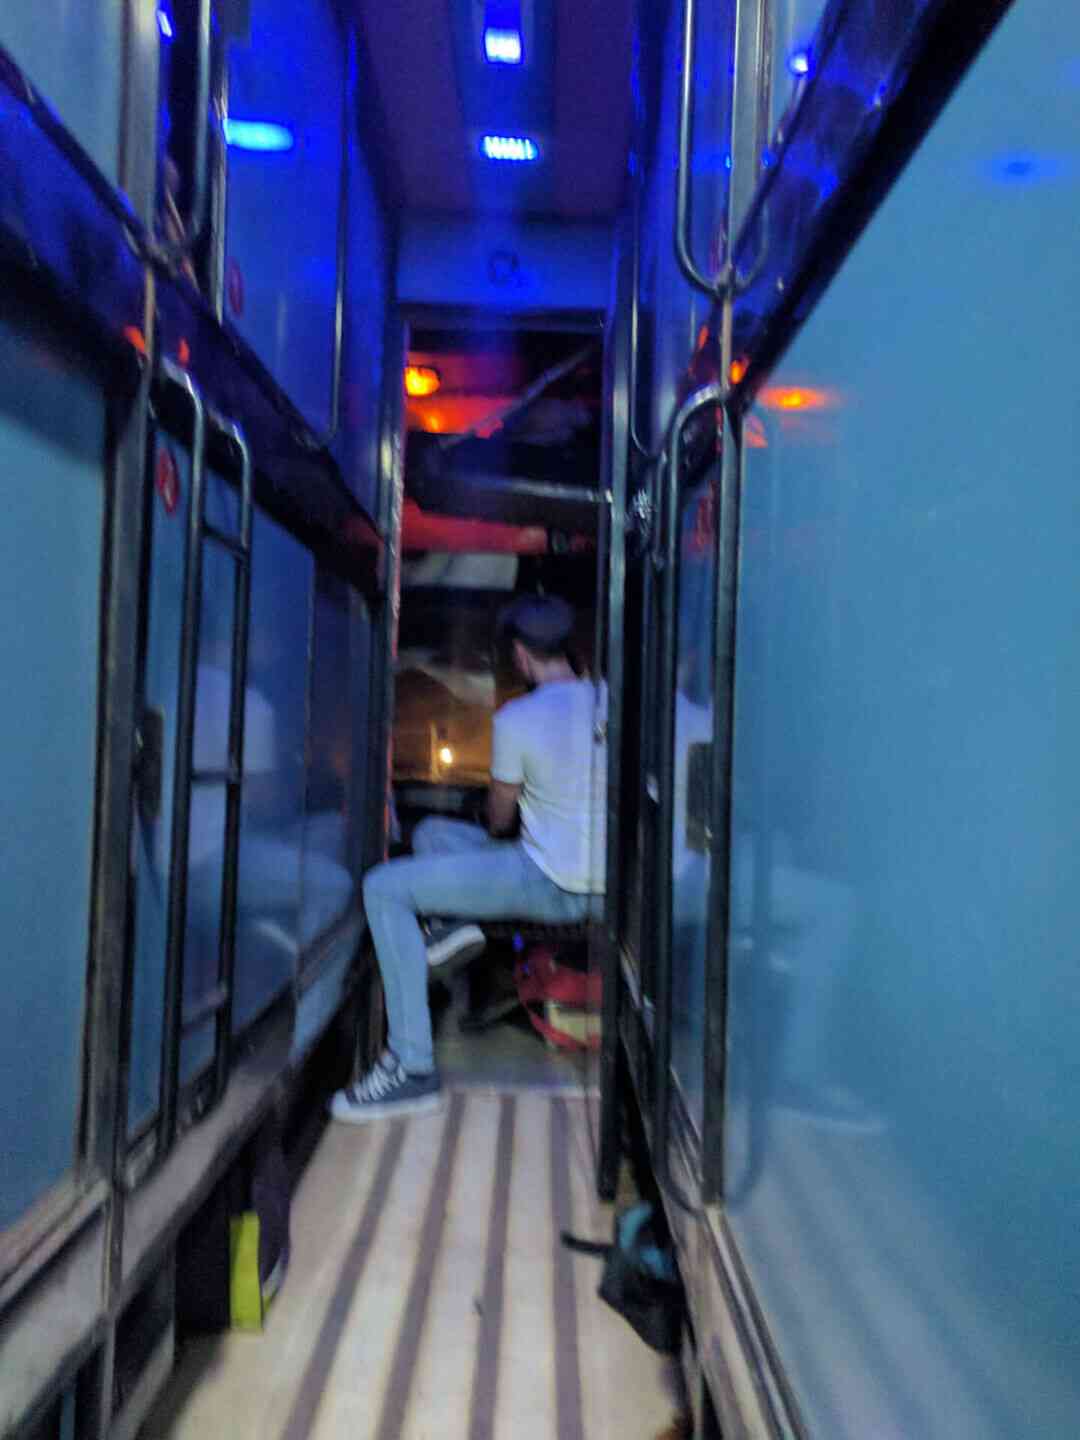 Indian sleeper bus